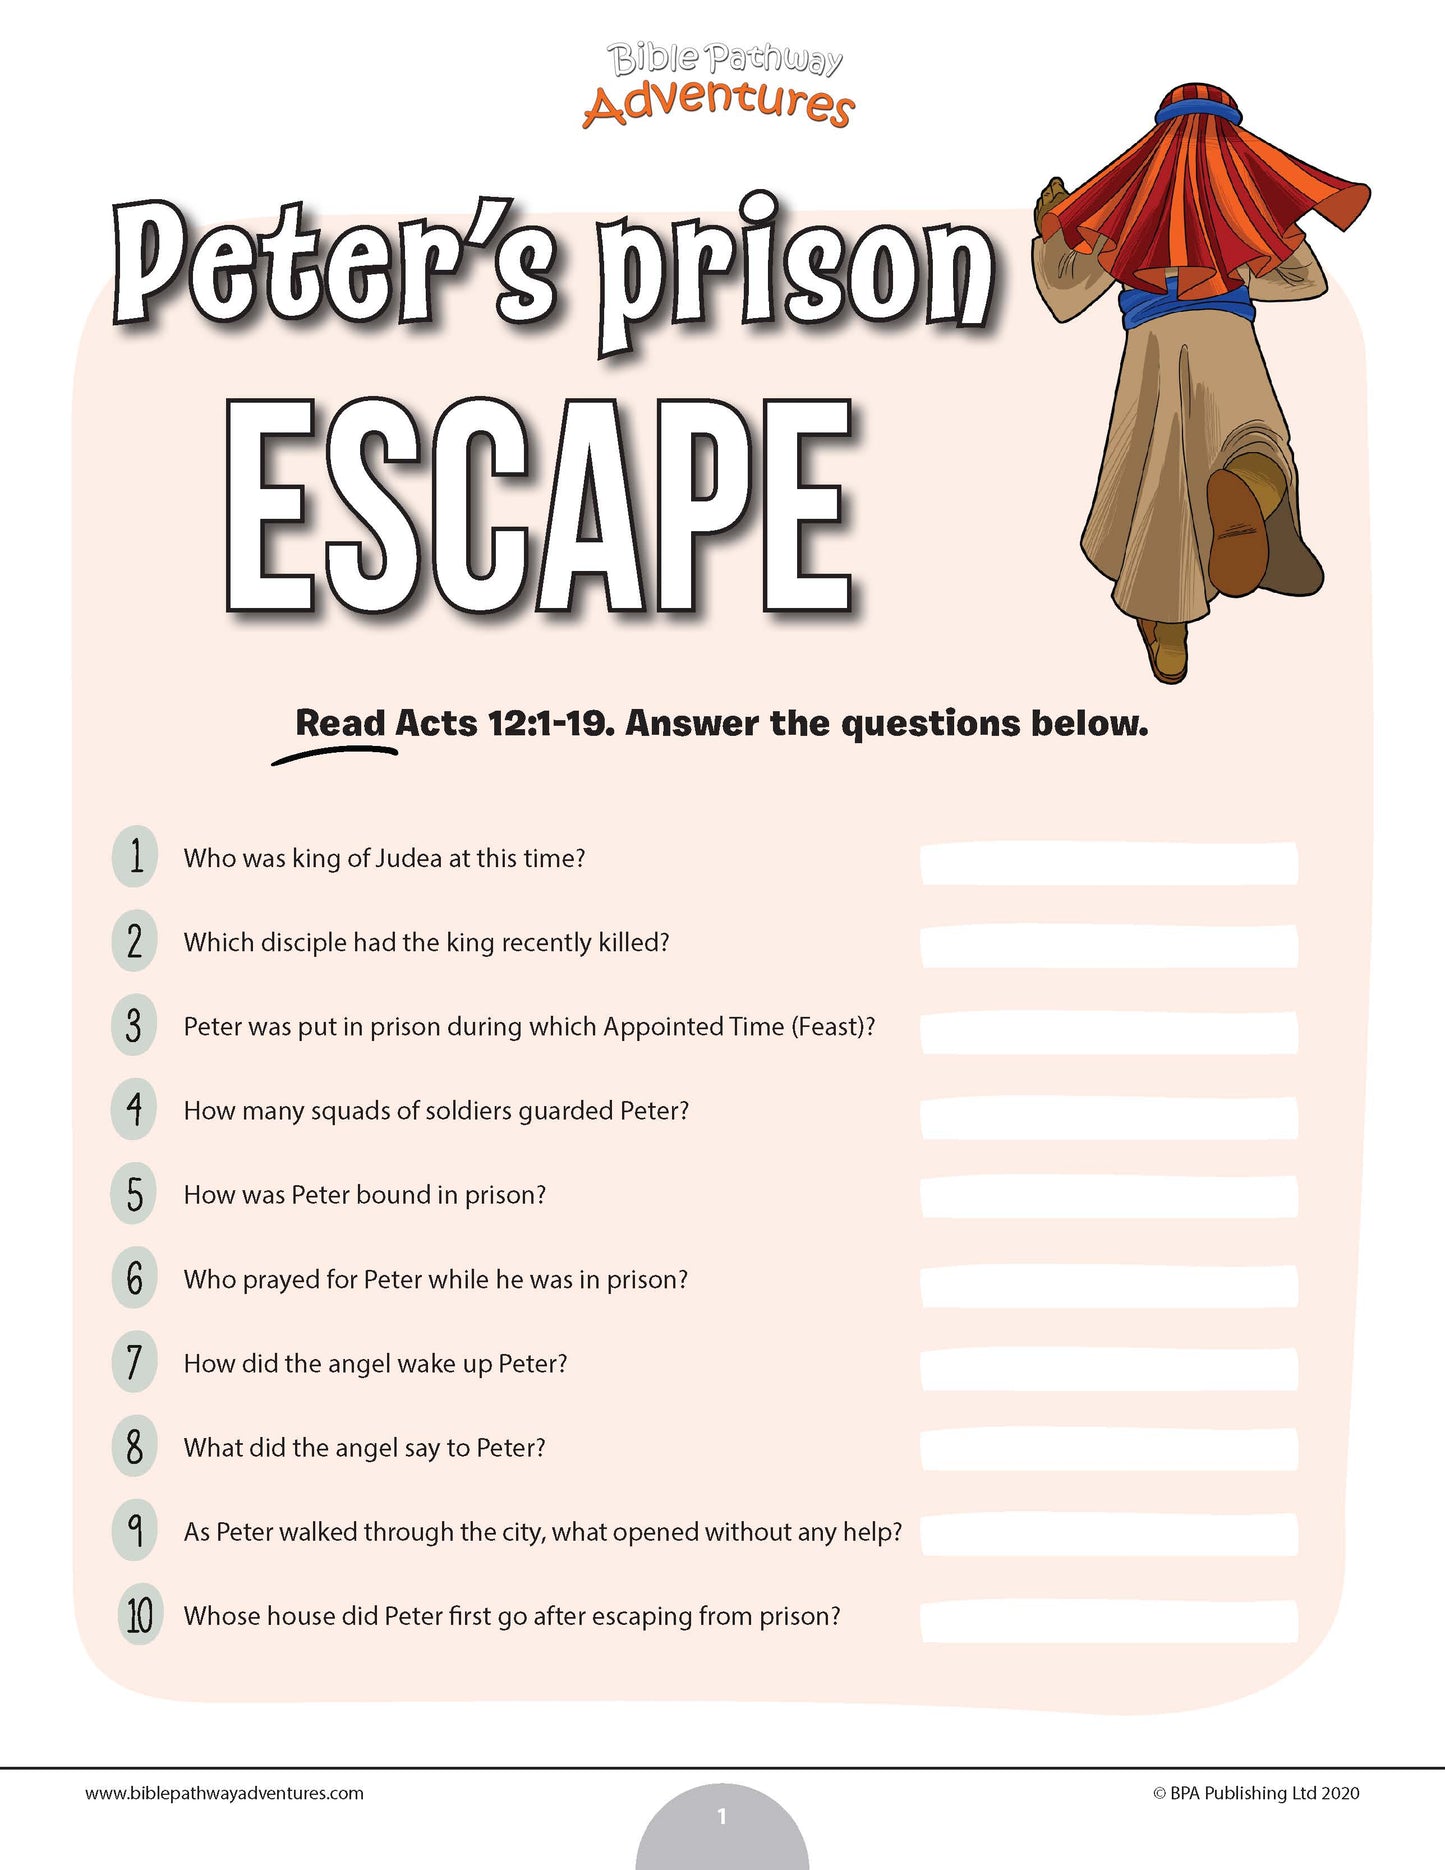 Cuestionario sobre la fuga de la prisión de Peter